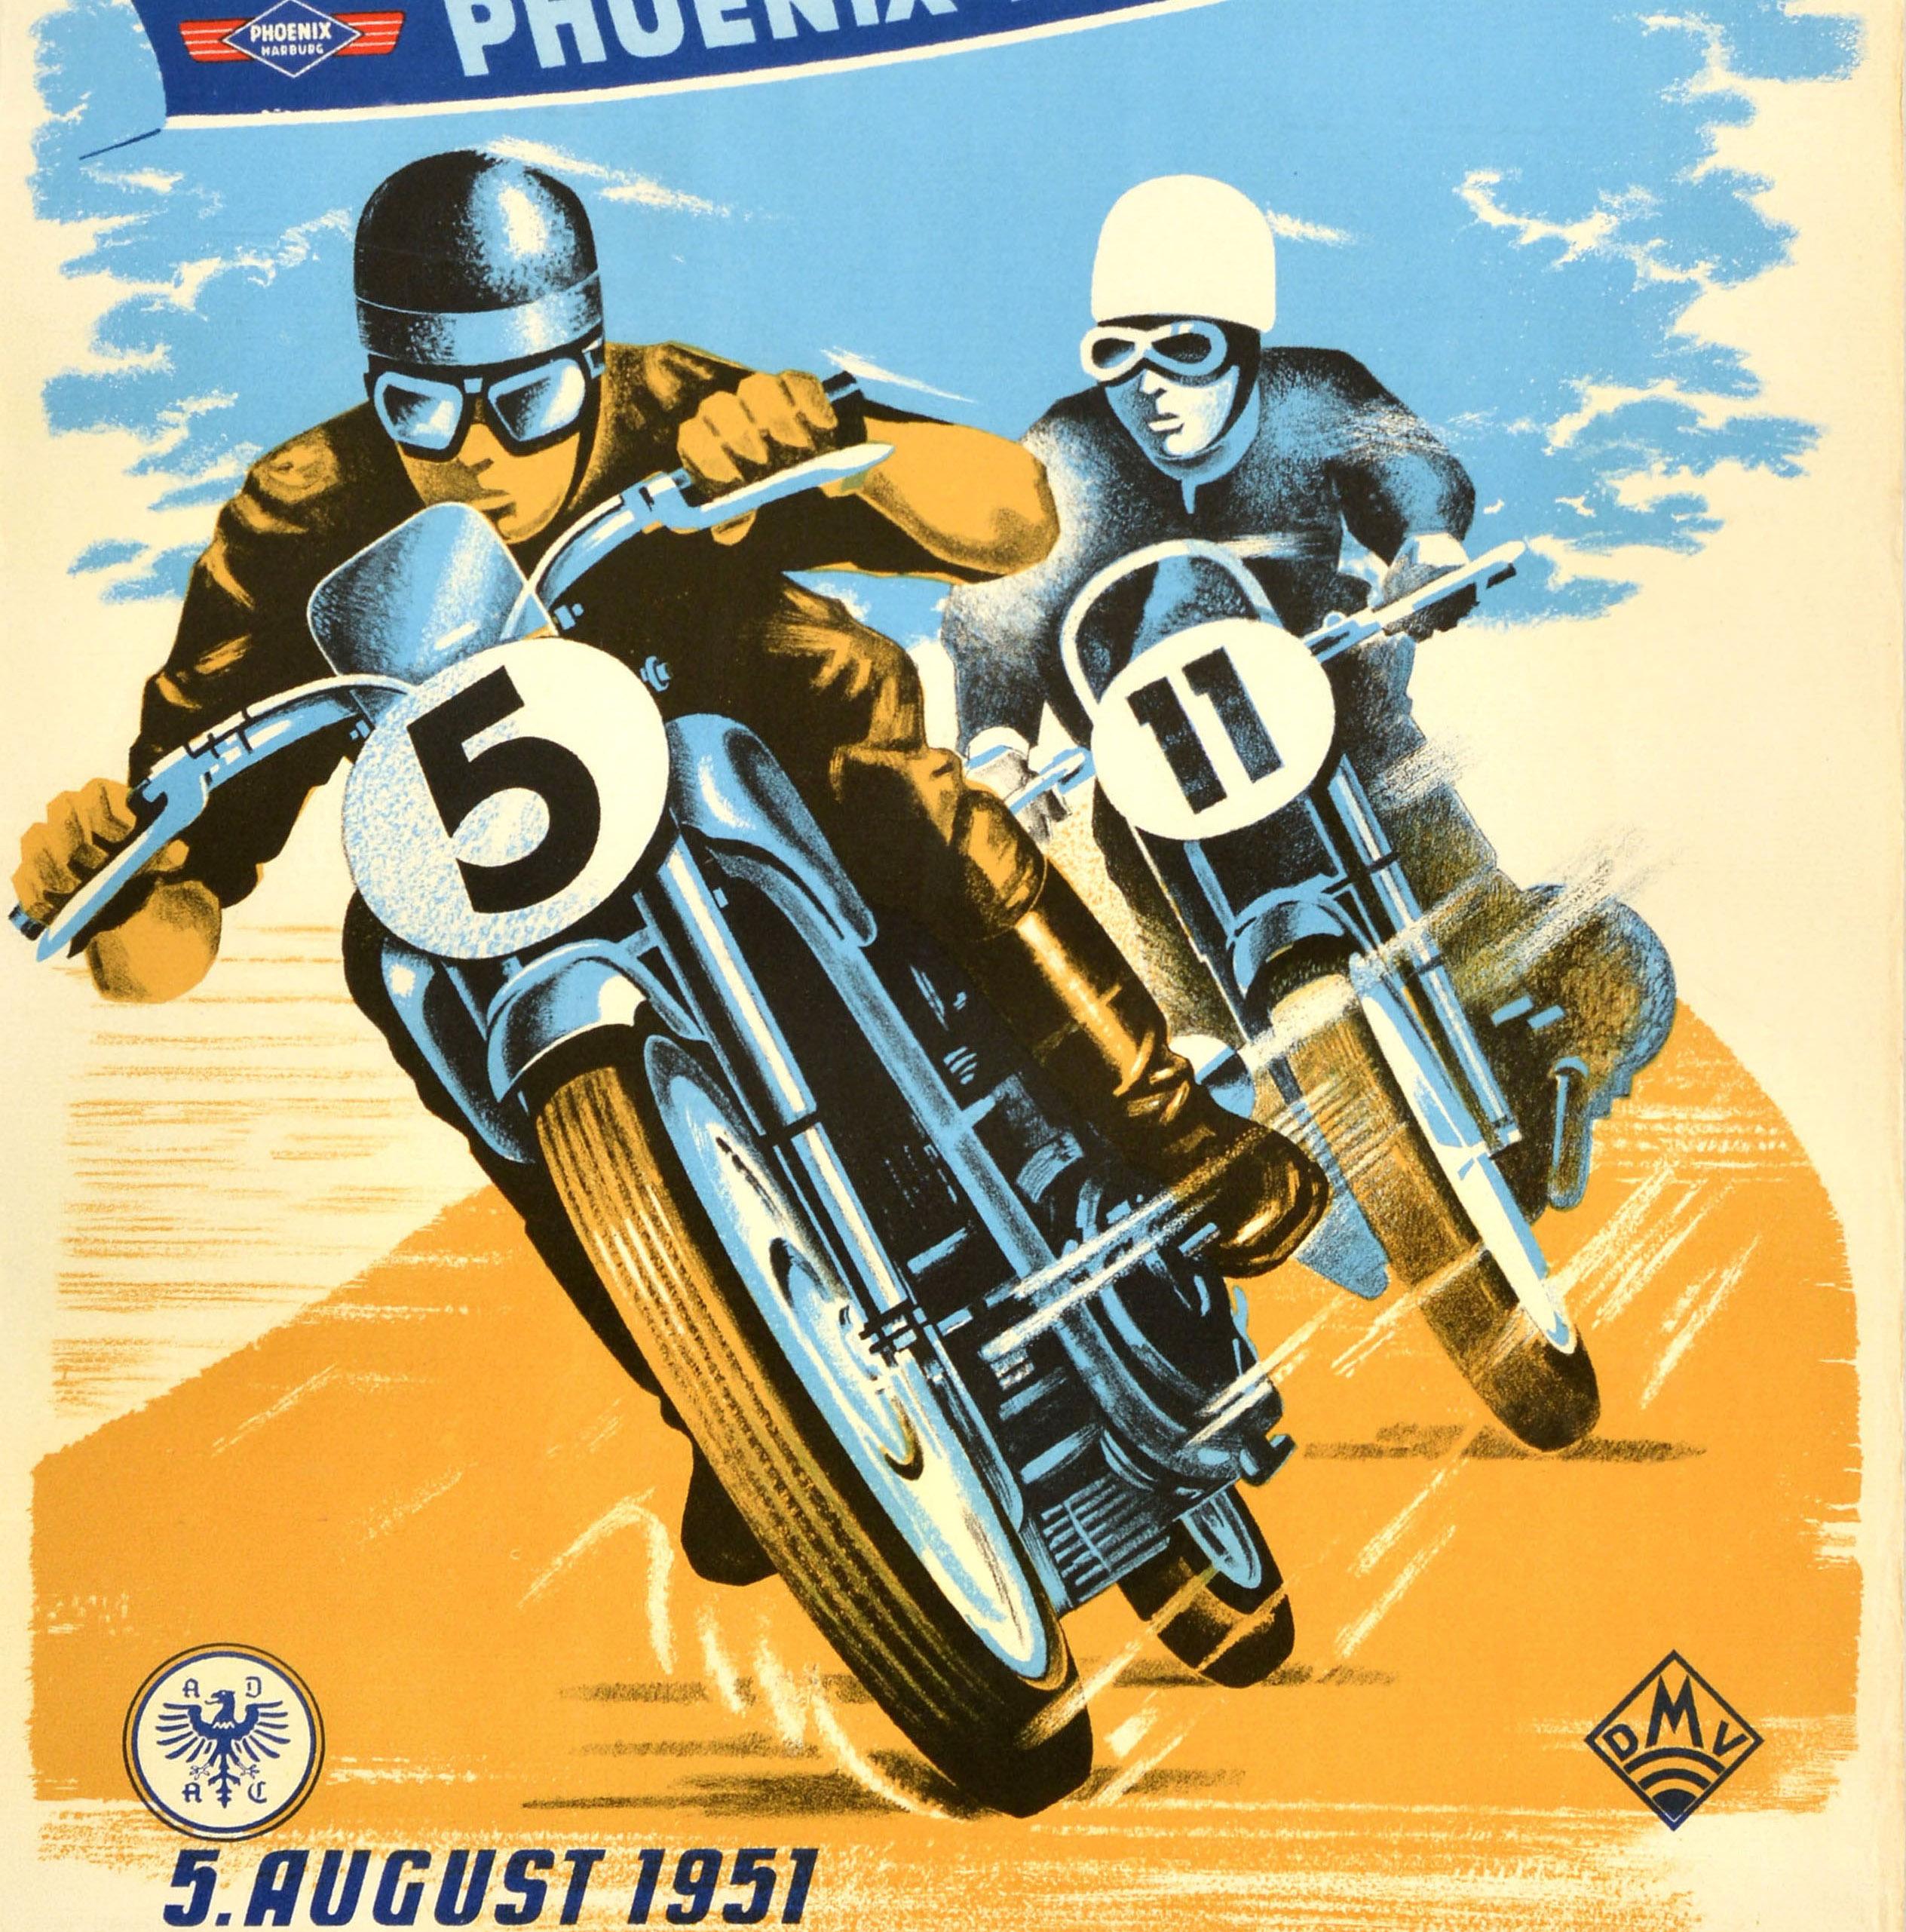 Publicité originale d'époque pour une course sponsorisée par Pheonix Reifen Rund um den Kellersee / Phoenix Tyres autour du lac Kellersee le 5 août 1951 - présentant un dessin coloré montrant deux motocyclistes sur des motos bleues faisant la course